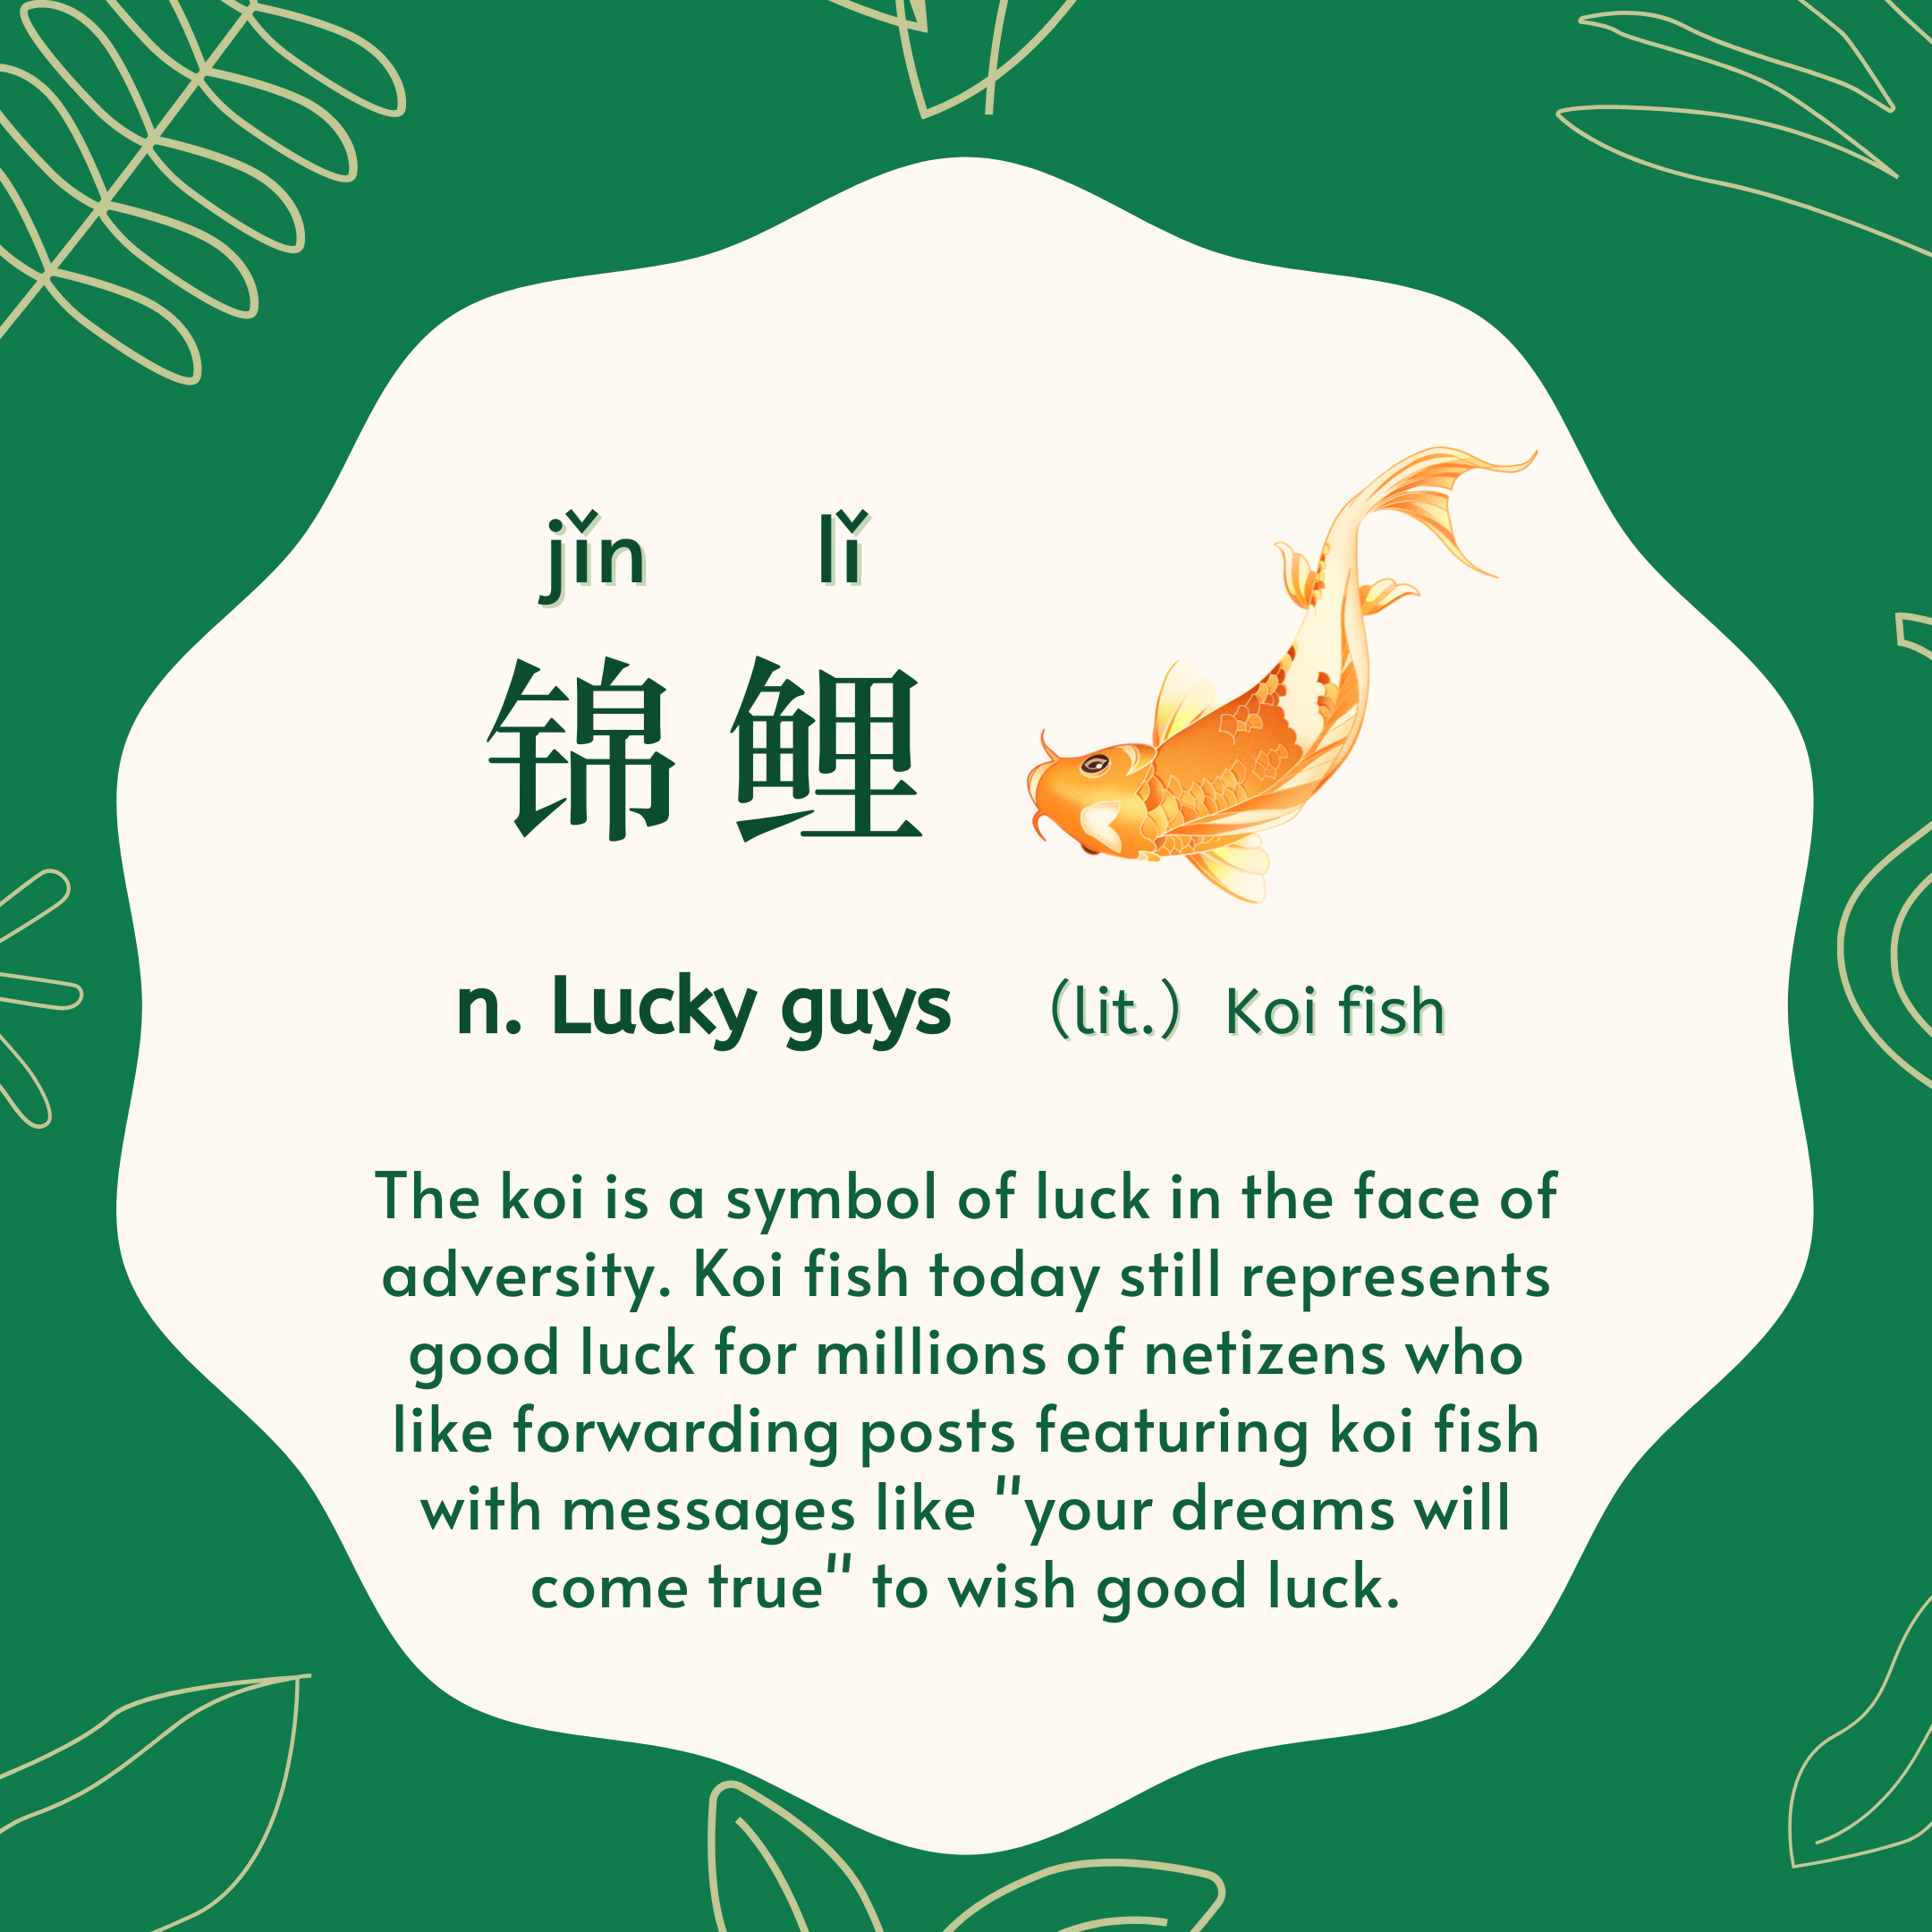 锦鲤 jǐn lǐ n. Lucky guys lit. Koi fish. 